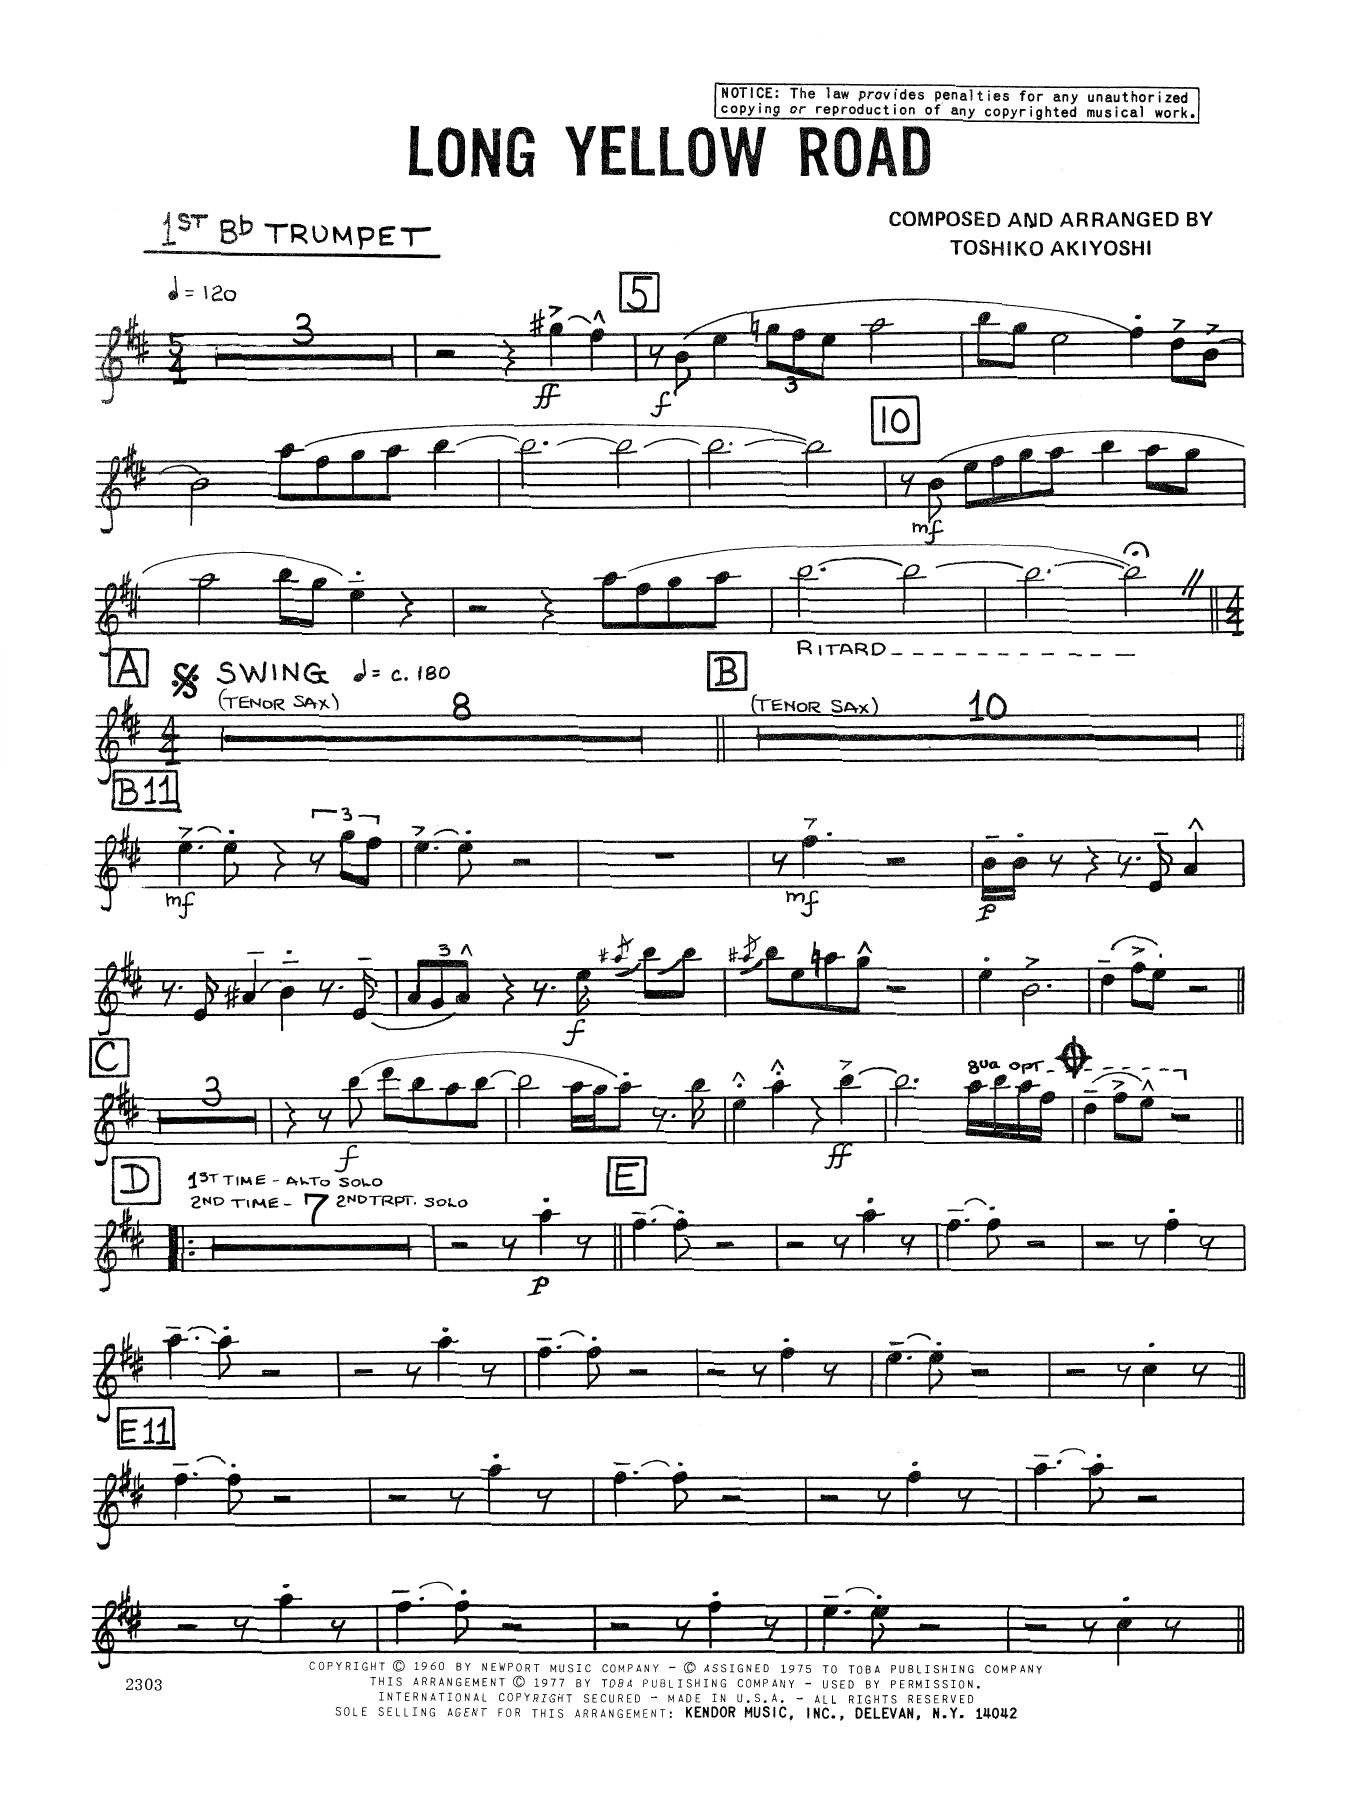 Download Toshiko Akiyoshi Long Yellow Road - 1st Bb Trumpet Sheet Music